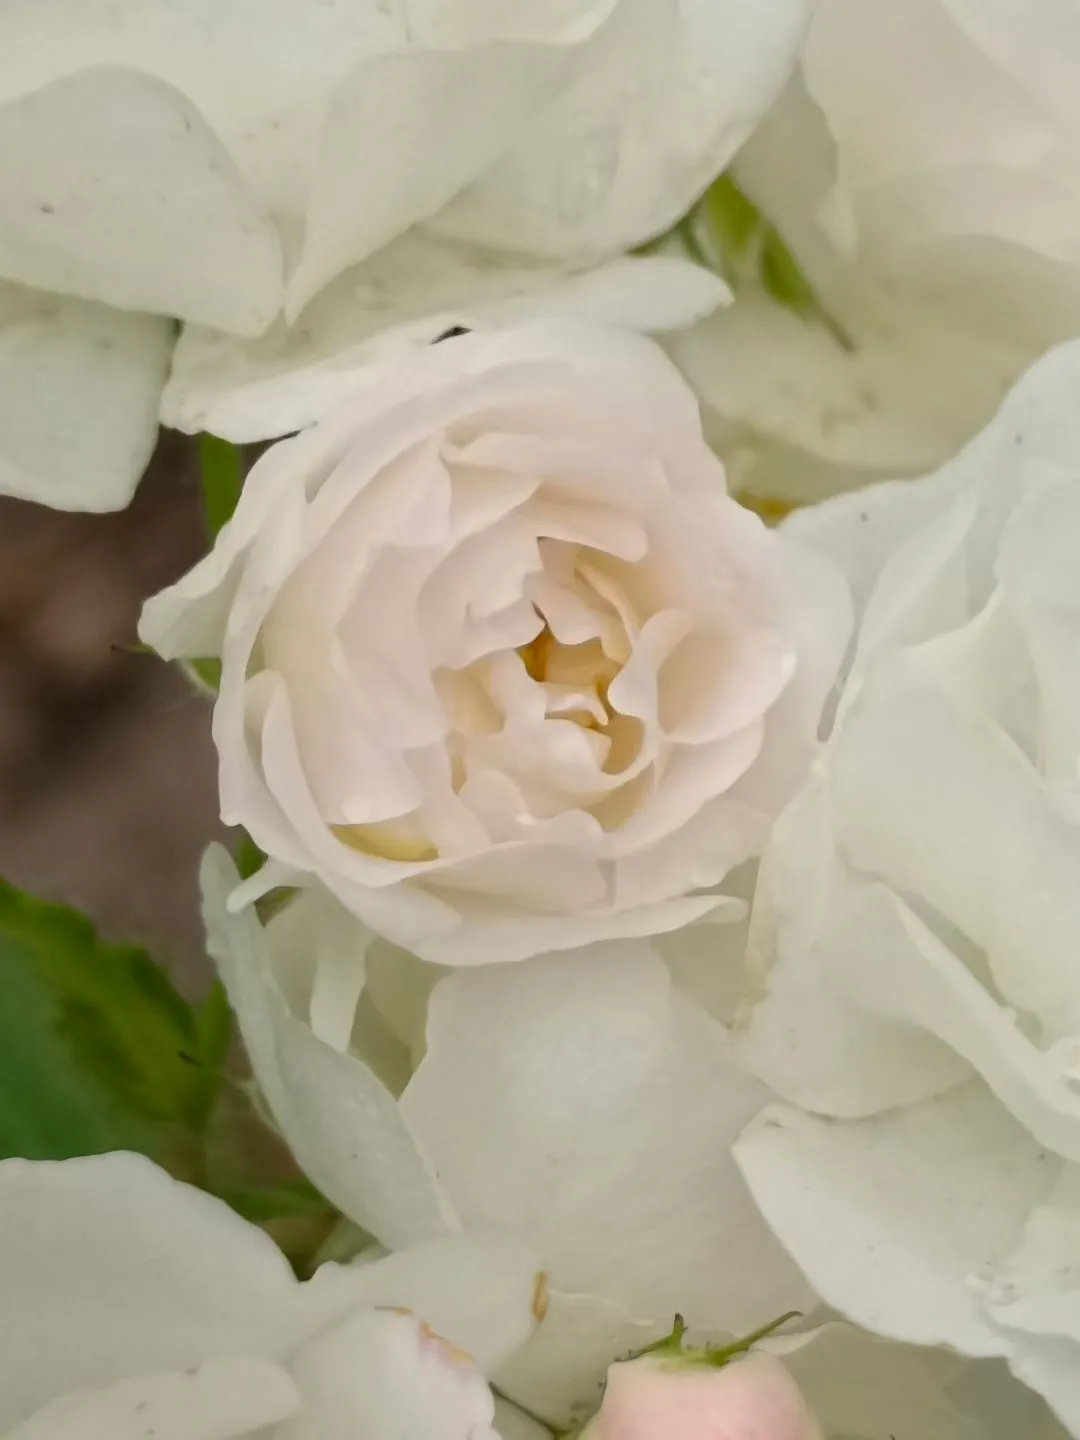 看 这些蔷薇花花骨朵竟然是粉色的 可爱 开开后又变成了白色好美妙 好神奇哇 大笑 赏花 拍花 记录花的美好用我最真诚的热